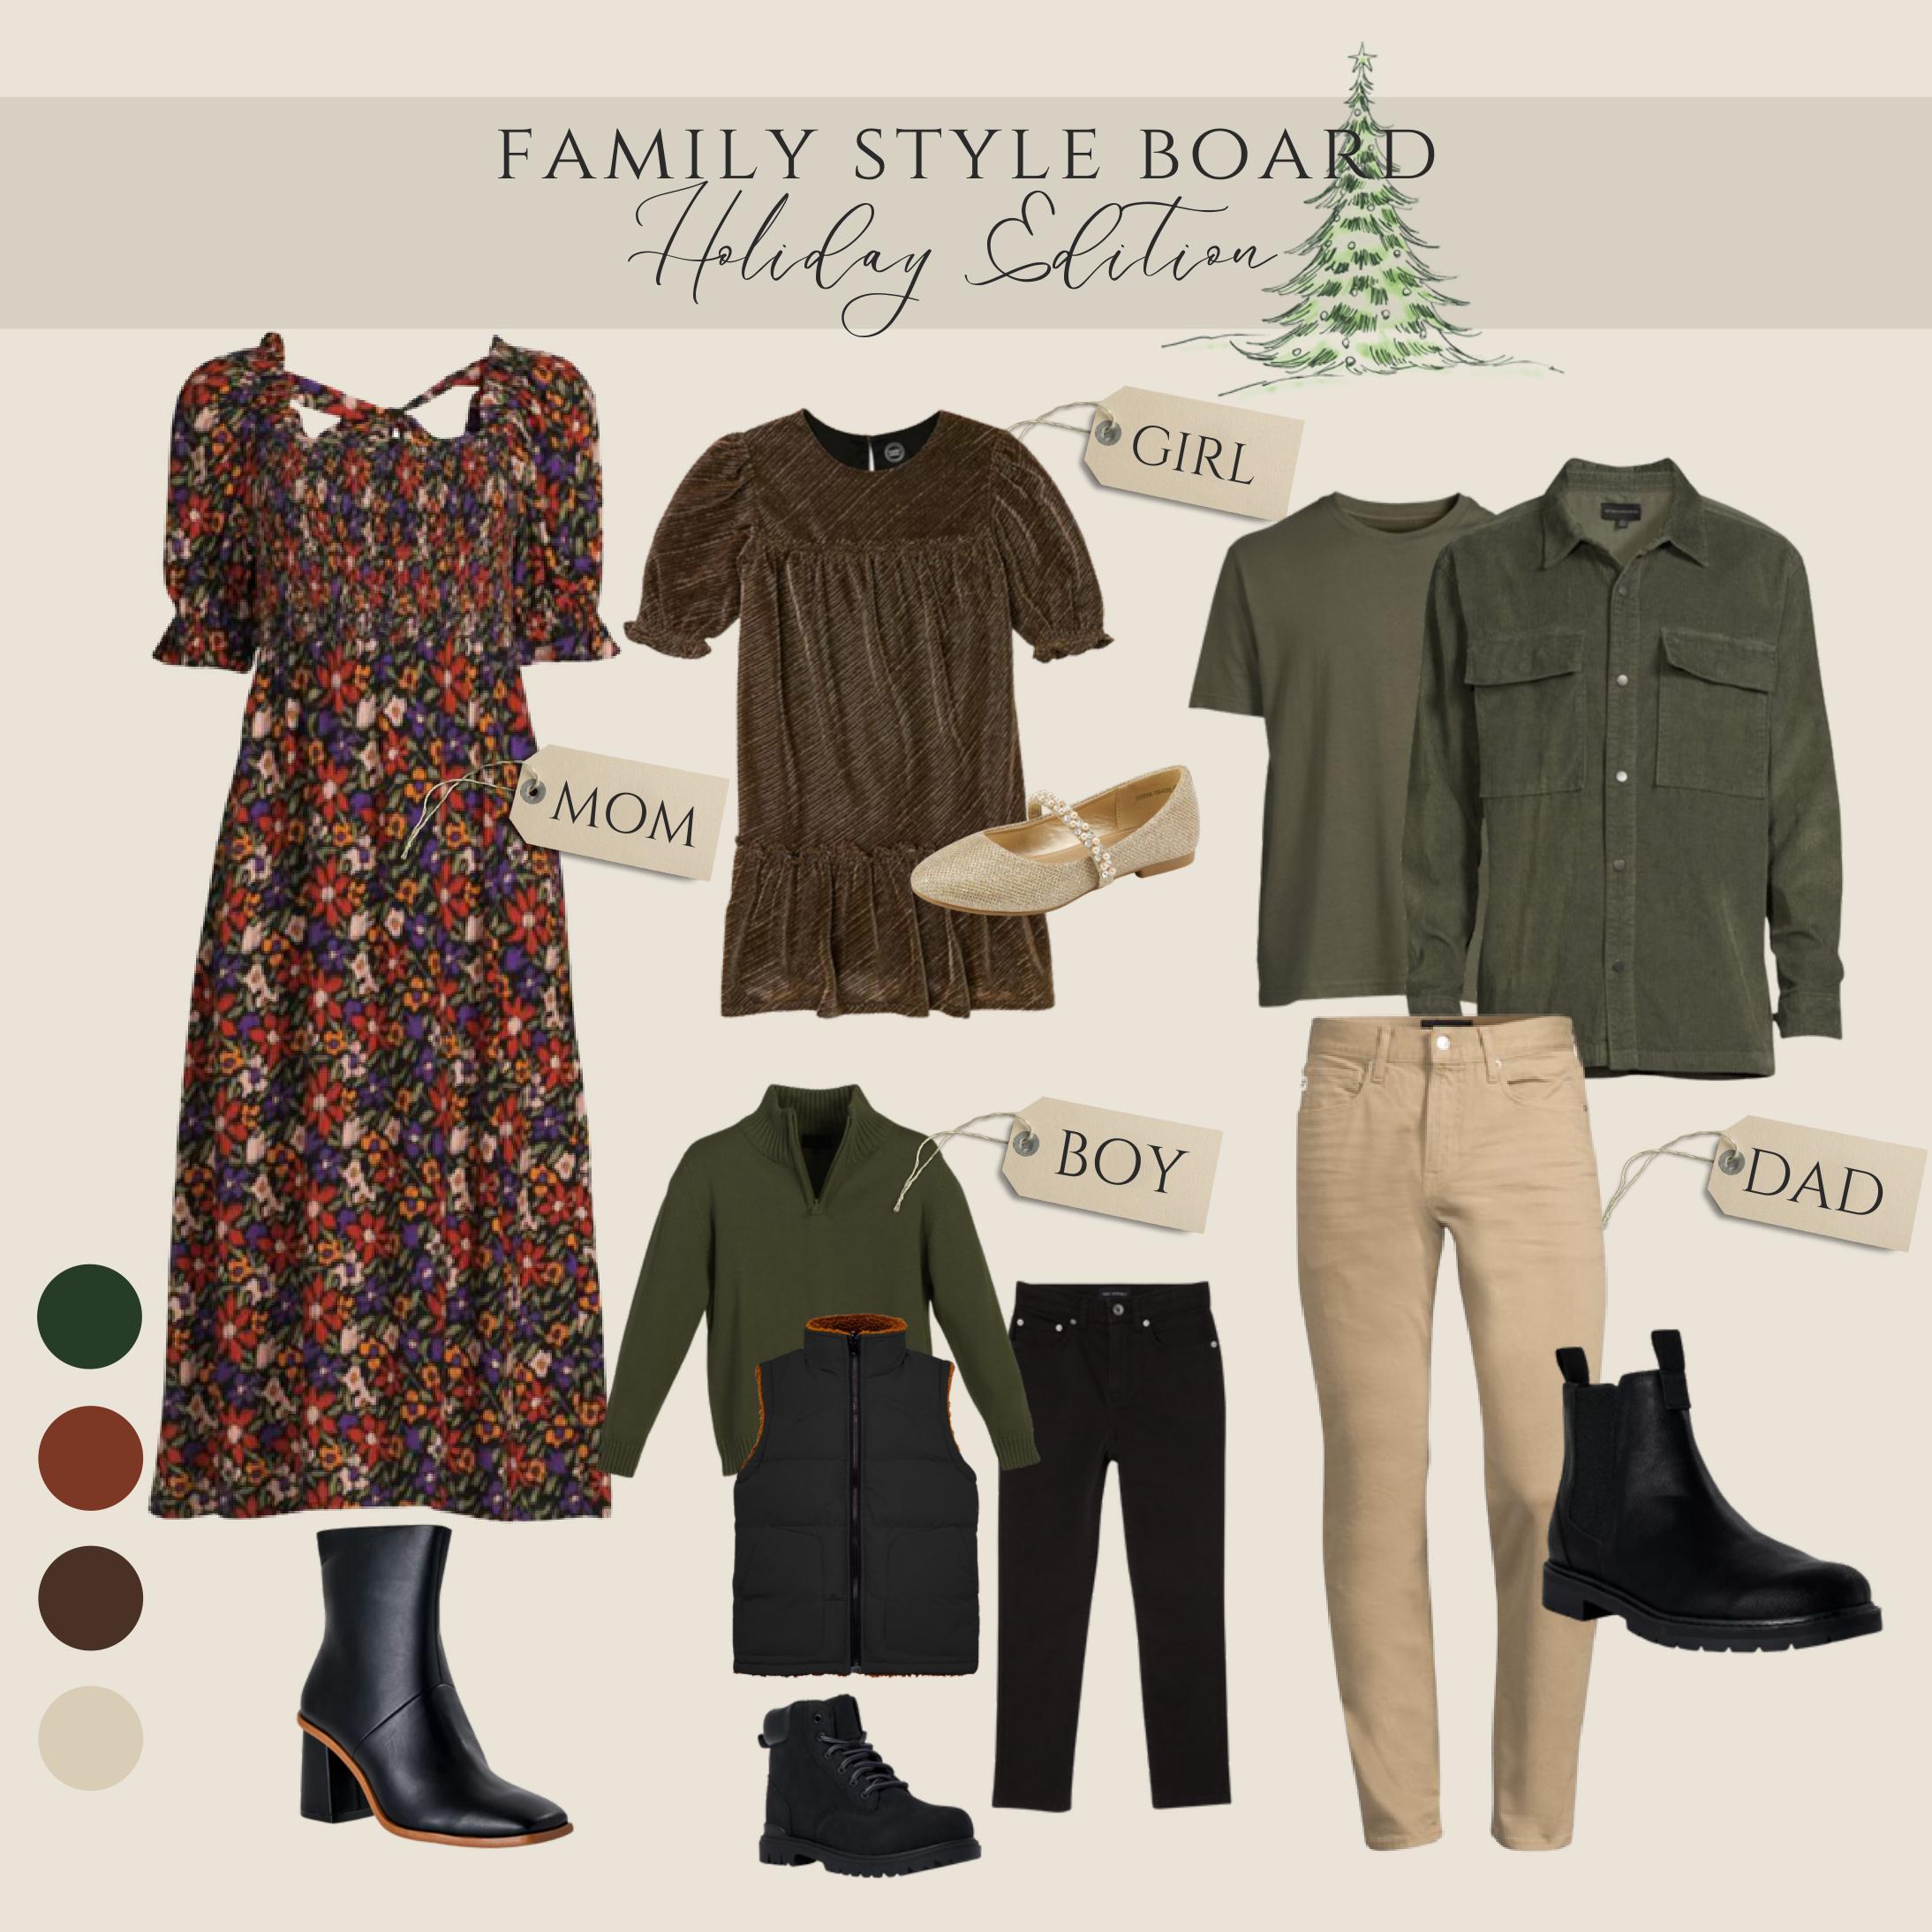 Family Wardrobe Board: Holiday Edition